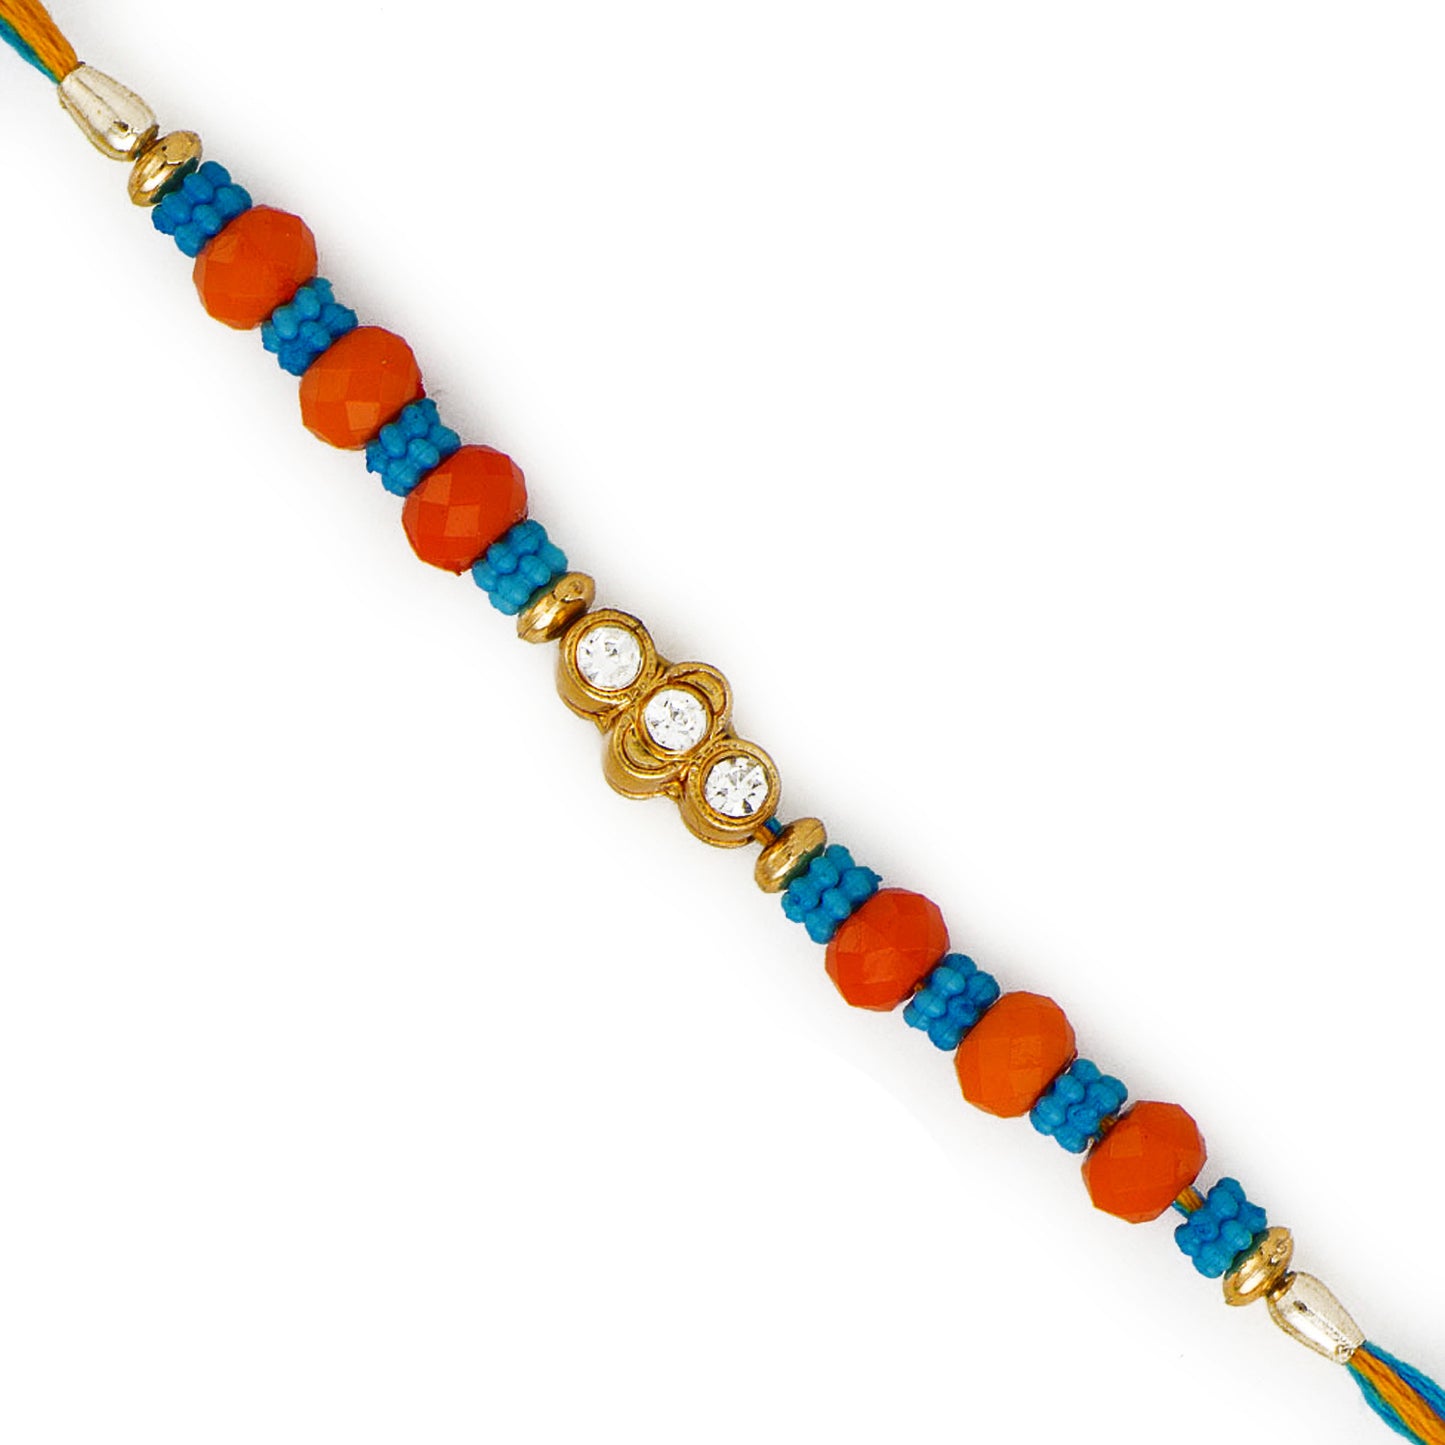 Aapno Rajasthan Blue & Orange Beads AD studded Rakhi - Default Title (RB17622)